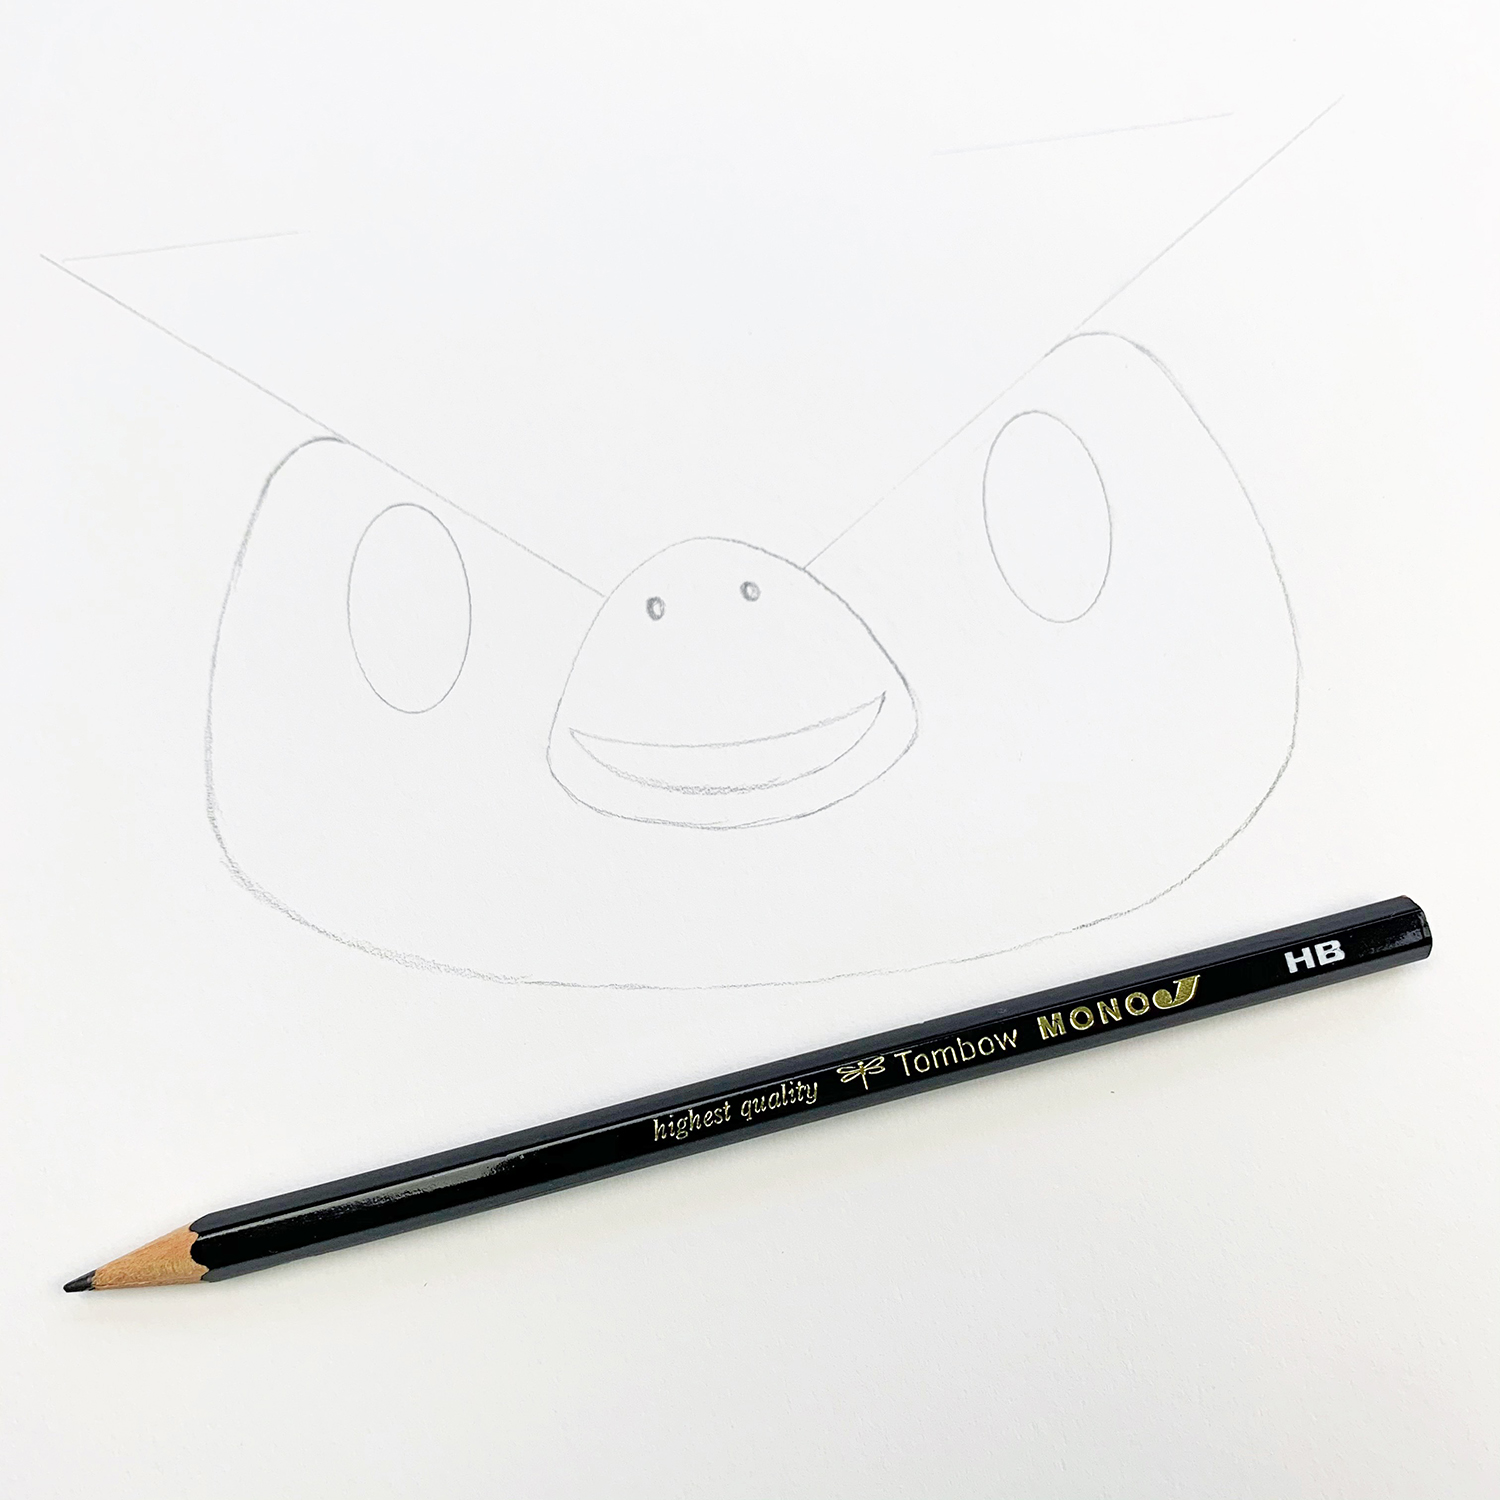 How to Create Animal Crossing Watercolor Fan Art - Jennie Garcia